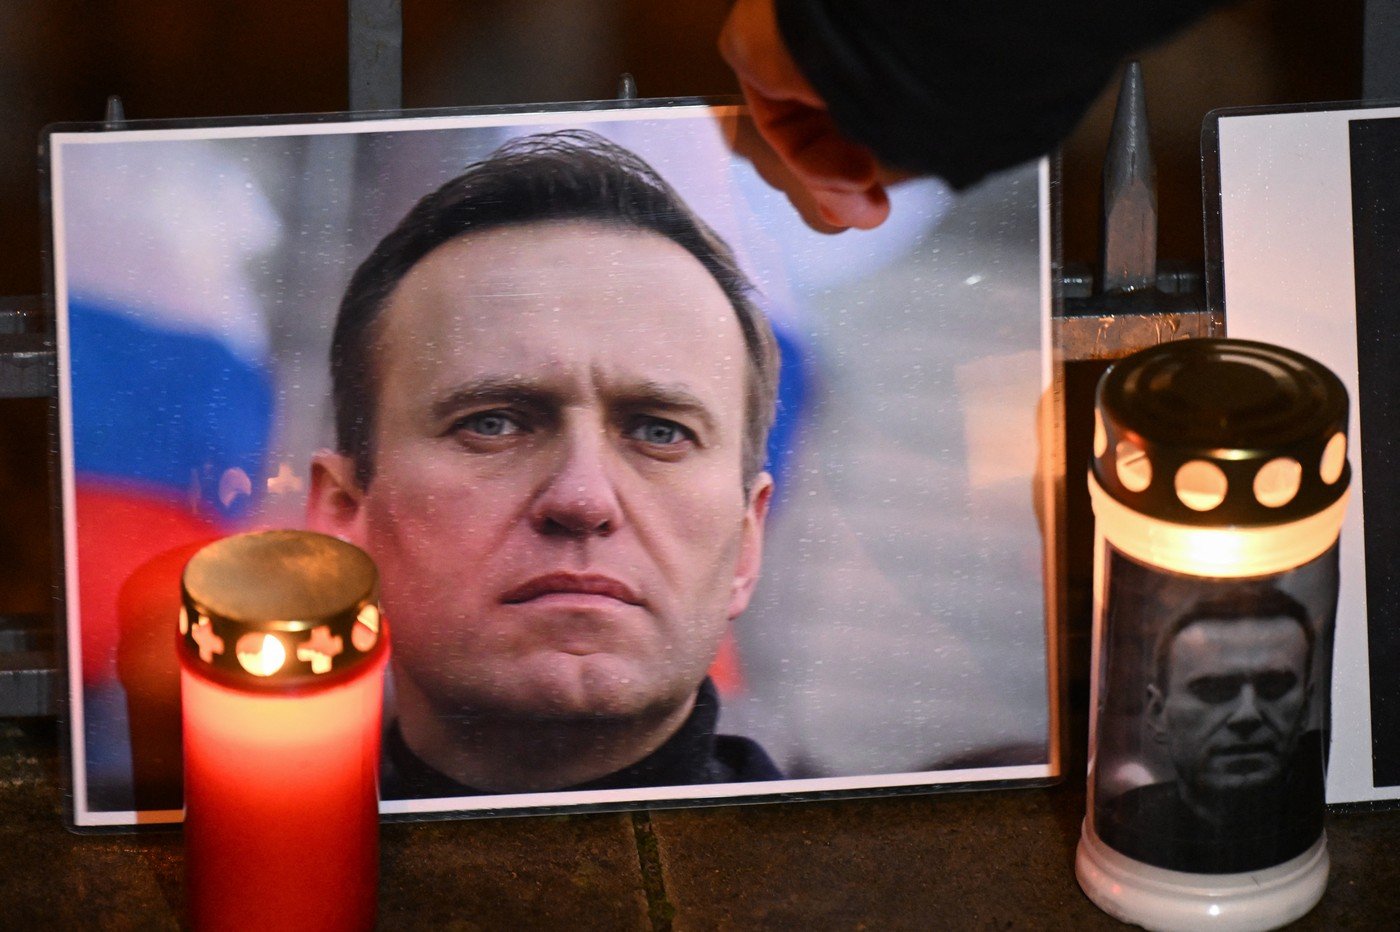 Navalnîi era la câteva zile distanță de a fi eliberat într-un schimb de prizonieri, spune o aliată a opozantului. Ea îl acuză pe Putin de crimă